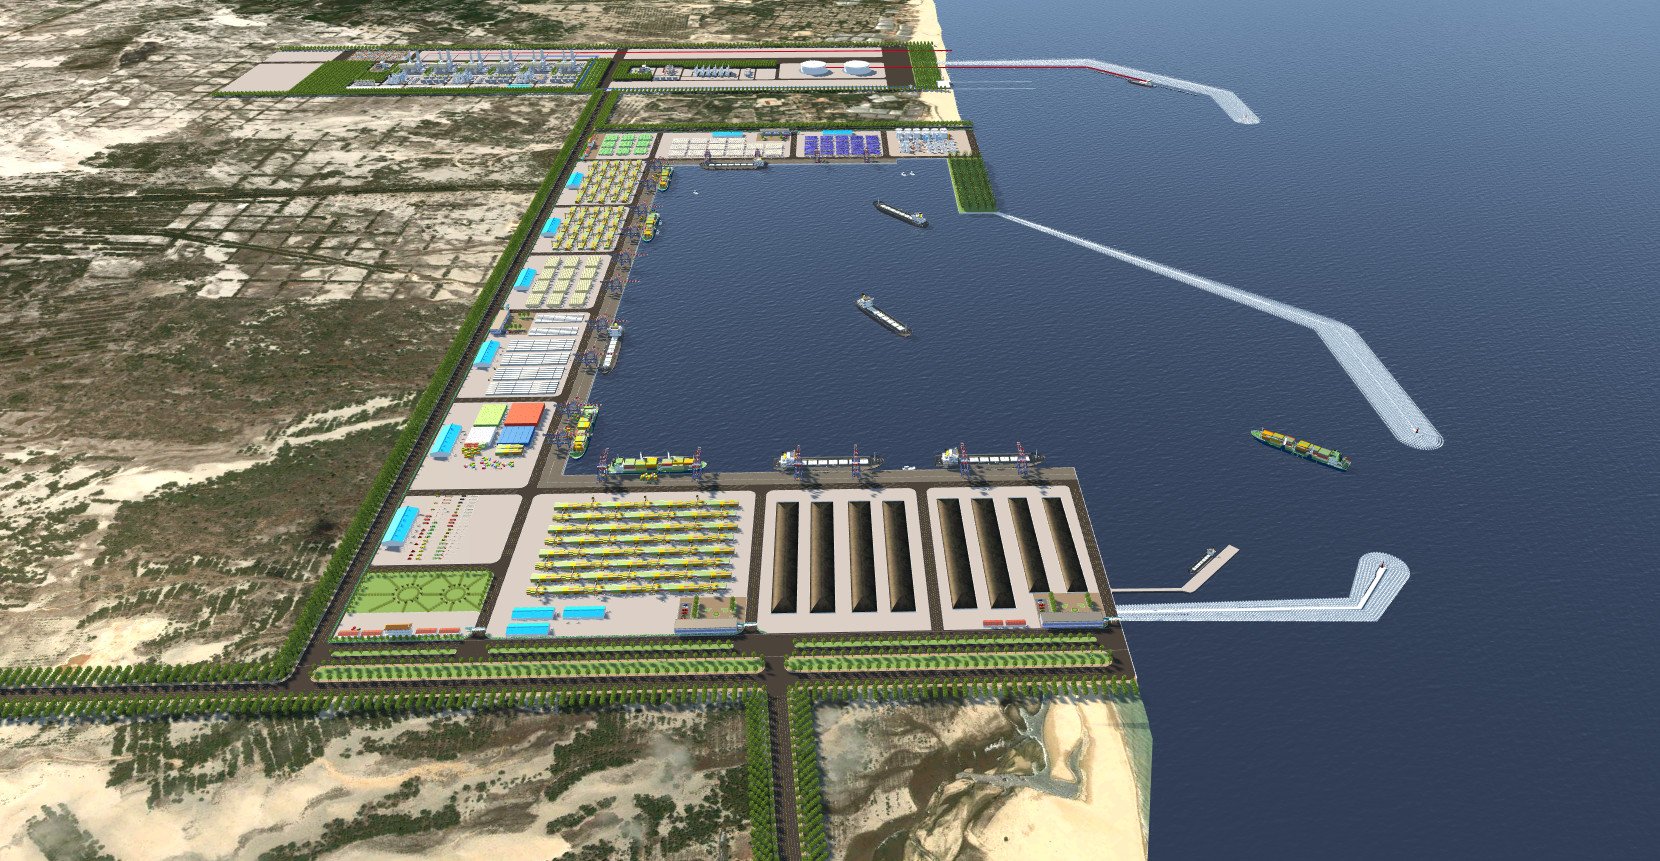 Kinh doanh - Quảng Trị trao quyết định chủ trương đầu tư dự án Trung tâm điện khí LNG Hải Lăng trị giá 2,3 tỷ USD (Hình 6).